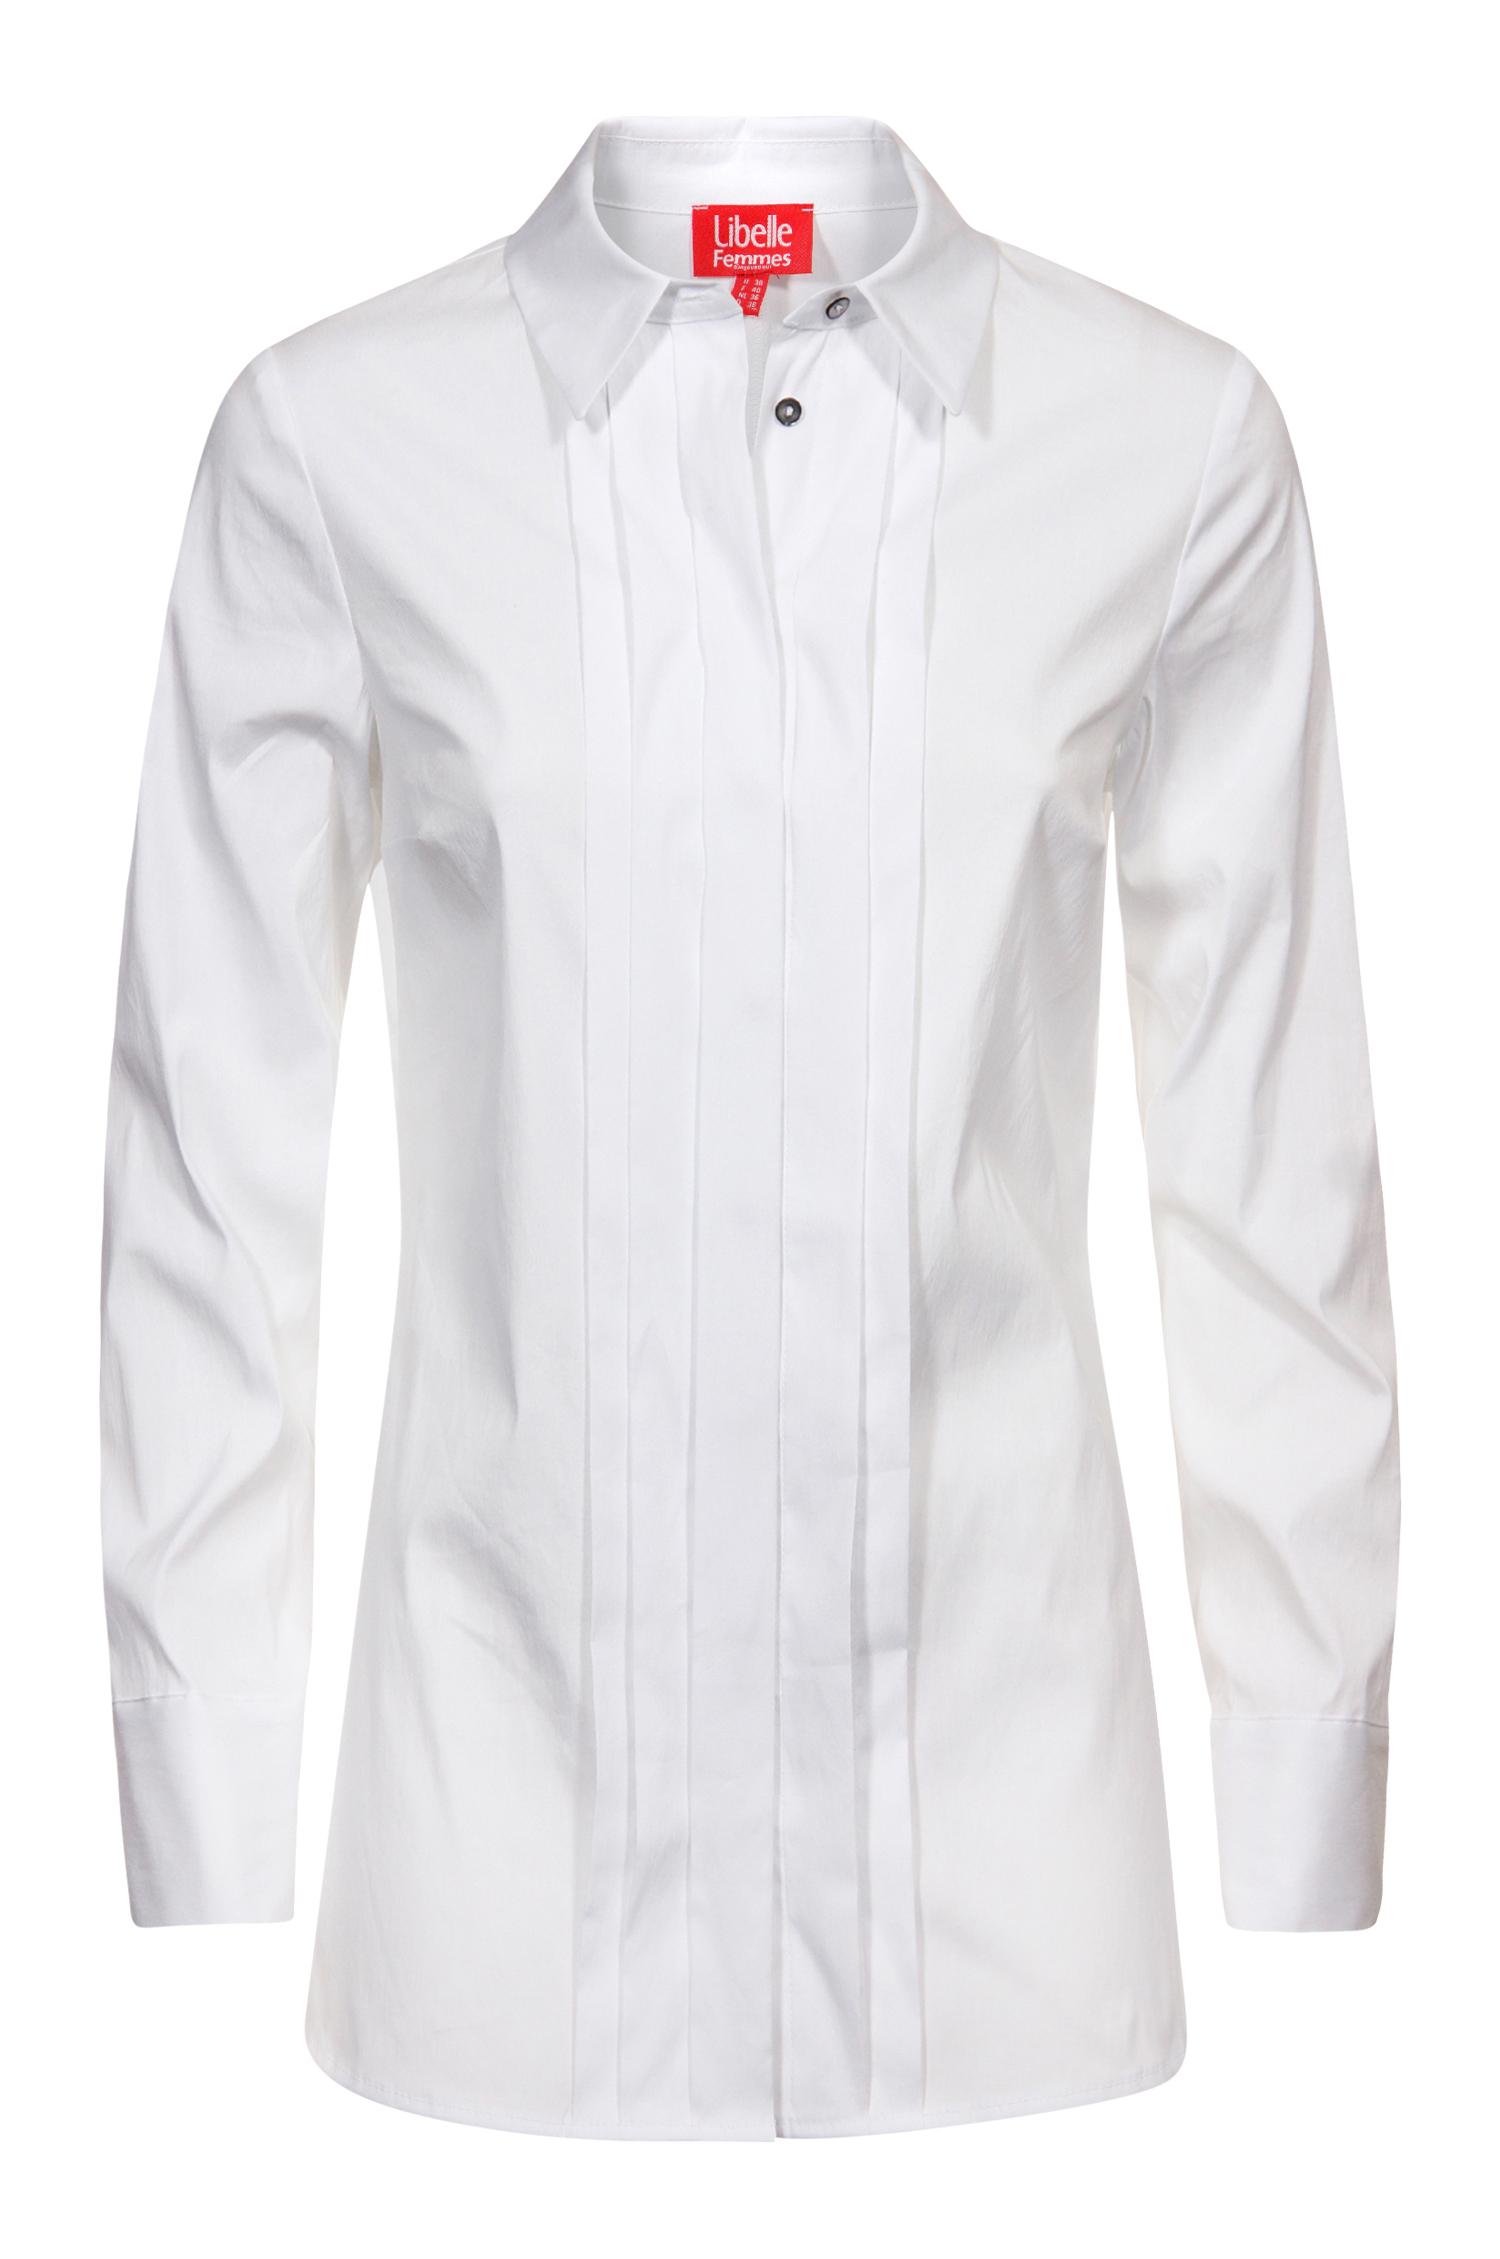 Chemise blanche plissée - 44,95€